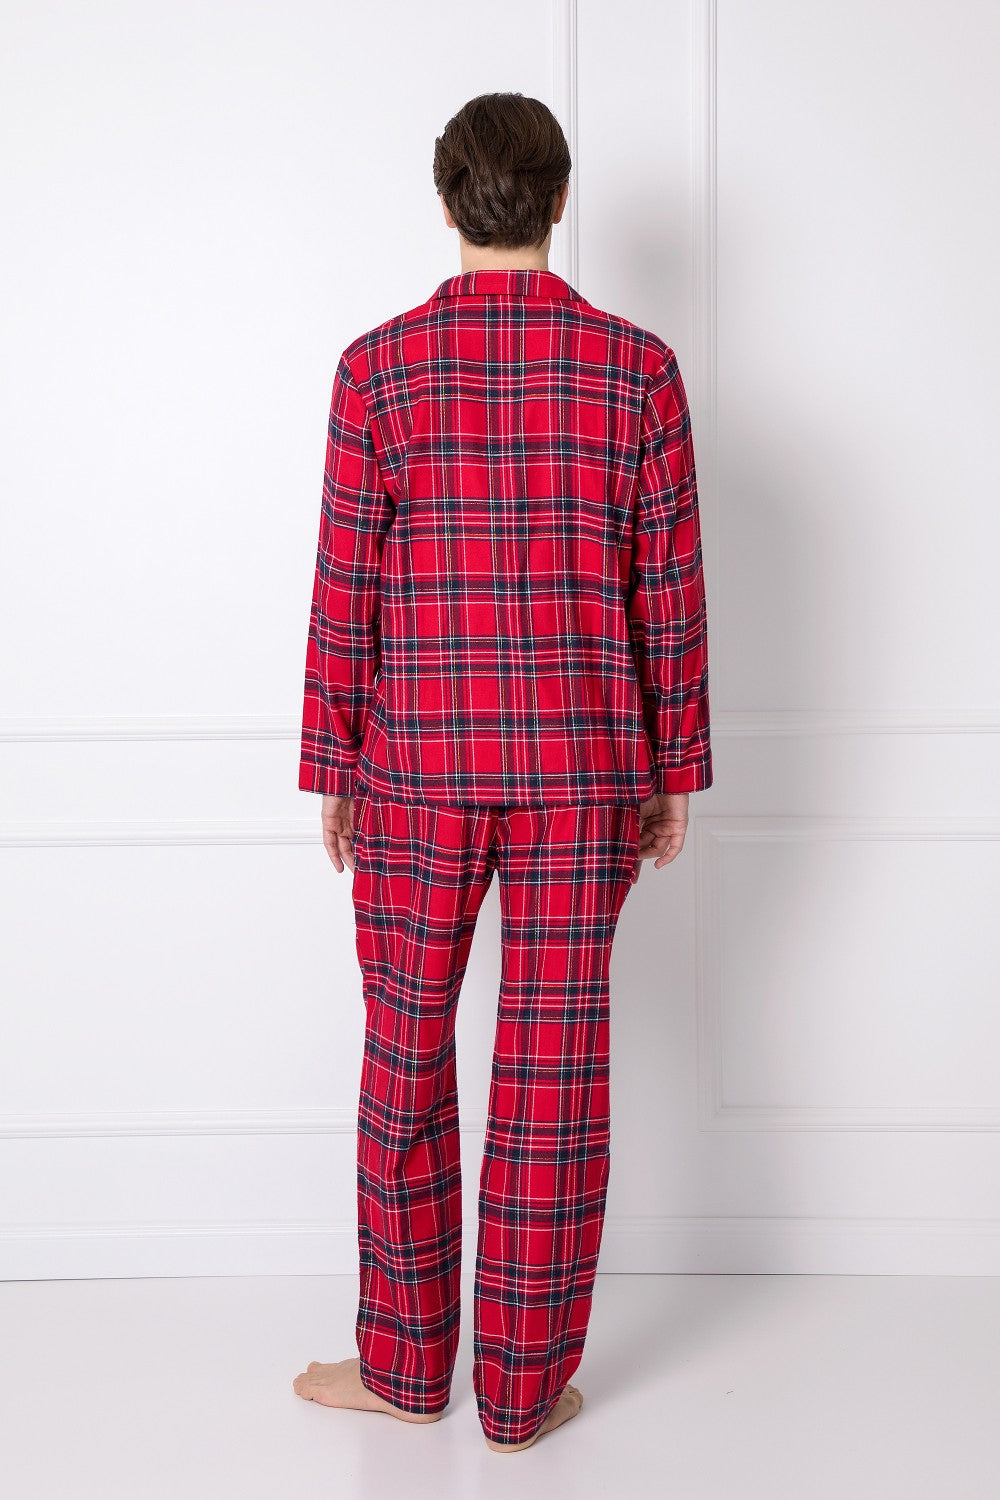 Baumwolle Flanell Herren Langes Weihnachtspyjama in Rot - geschenk für Ihn